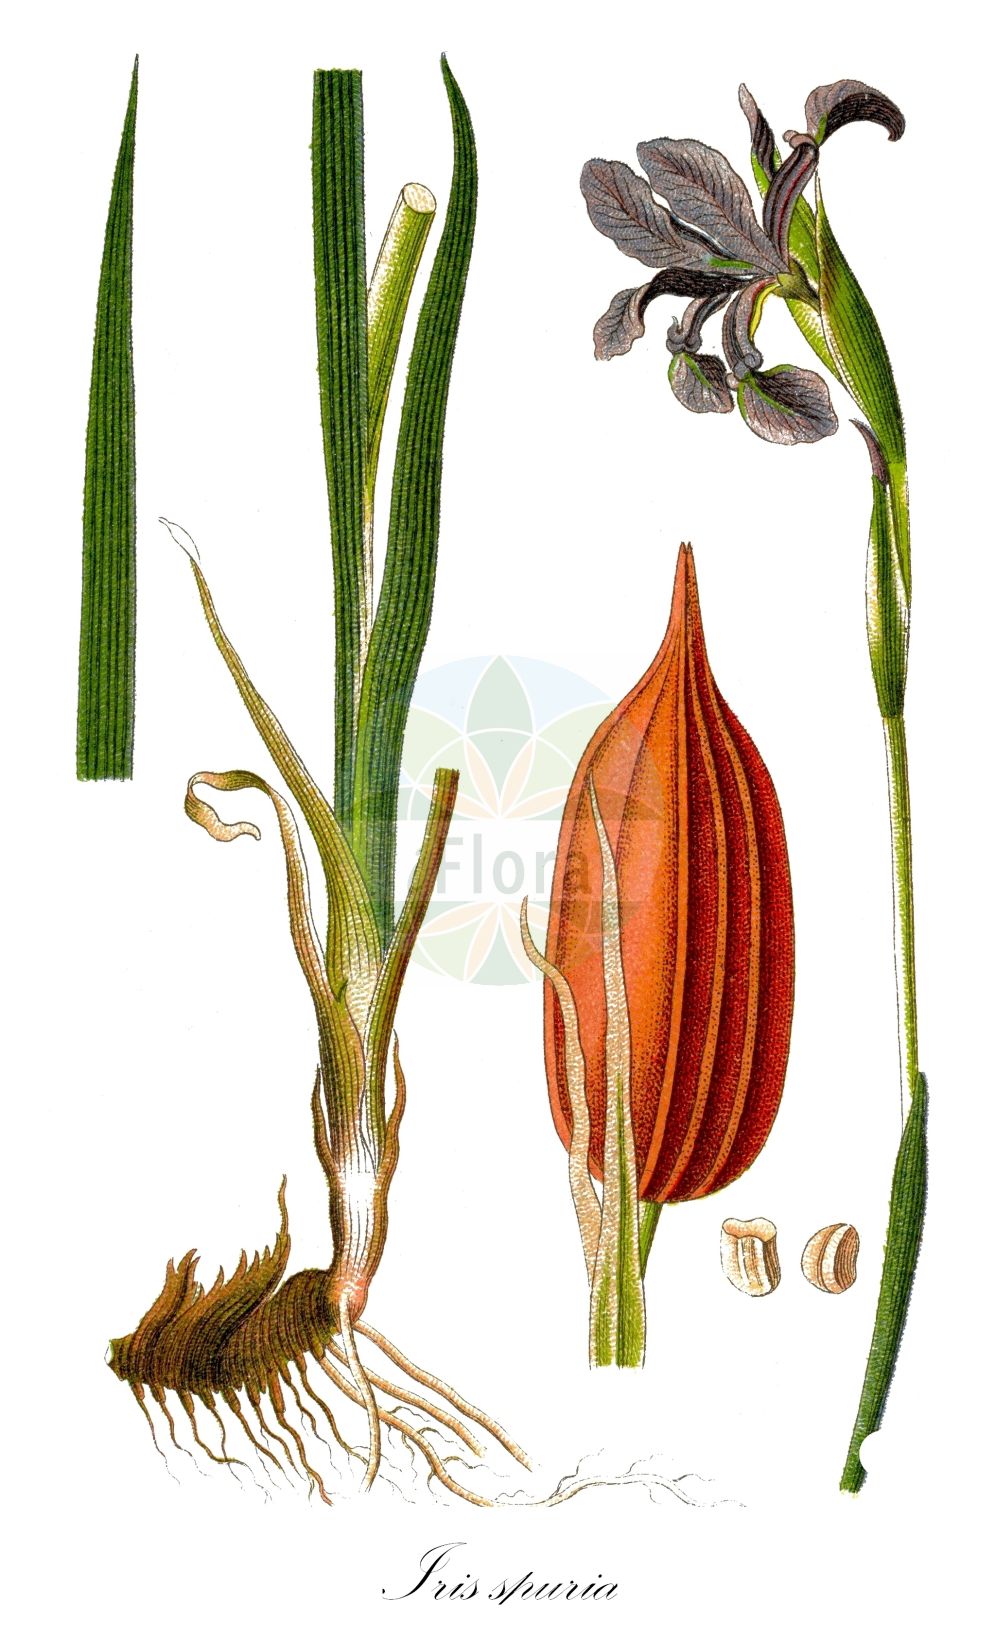 Historische Abbildung von Iris spuria (Salzwiesen-Schwertlilie - Blue Iris). Das Bild zeigt Blatt, Bluete, Frucht und Same. ---- Historical Drawing of Iris spuria (Salzwiesen-Schwertlilie - Blue Iris). The image is showing leaf, flower, fruit and seed.(Iris spuria,Salzwiesen-Schwertlilie,Blue Iris,Chamaeiris spuria,Iris spuria,Limniris spuria,Xiphion spurium,Xyridion spurium,Salzwiesen-Schwertlilie,Sumpfwiesen-Schwertlilie,Wiesen-Schwertlilie,Blue Iris,Seashore Iris,Iris,Schwertlilie,Iris,Iridaceae,Schwertliliengewächse,Iris family,Blatt,Bluete,Frucht,Same,leaf,flower,fruit,seed,Sturm (1796f))